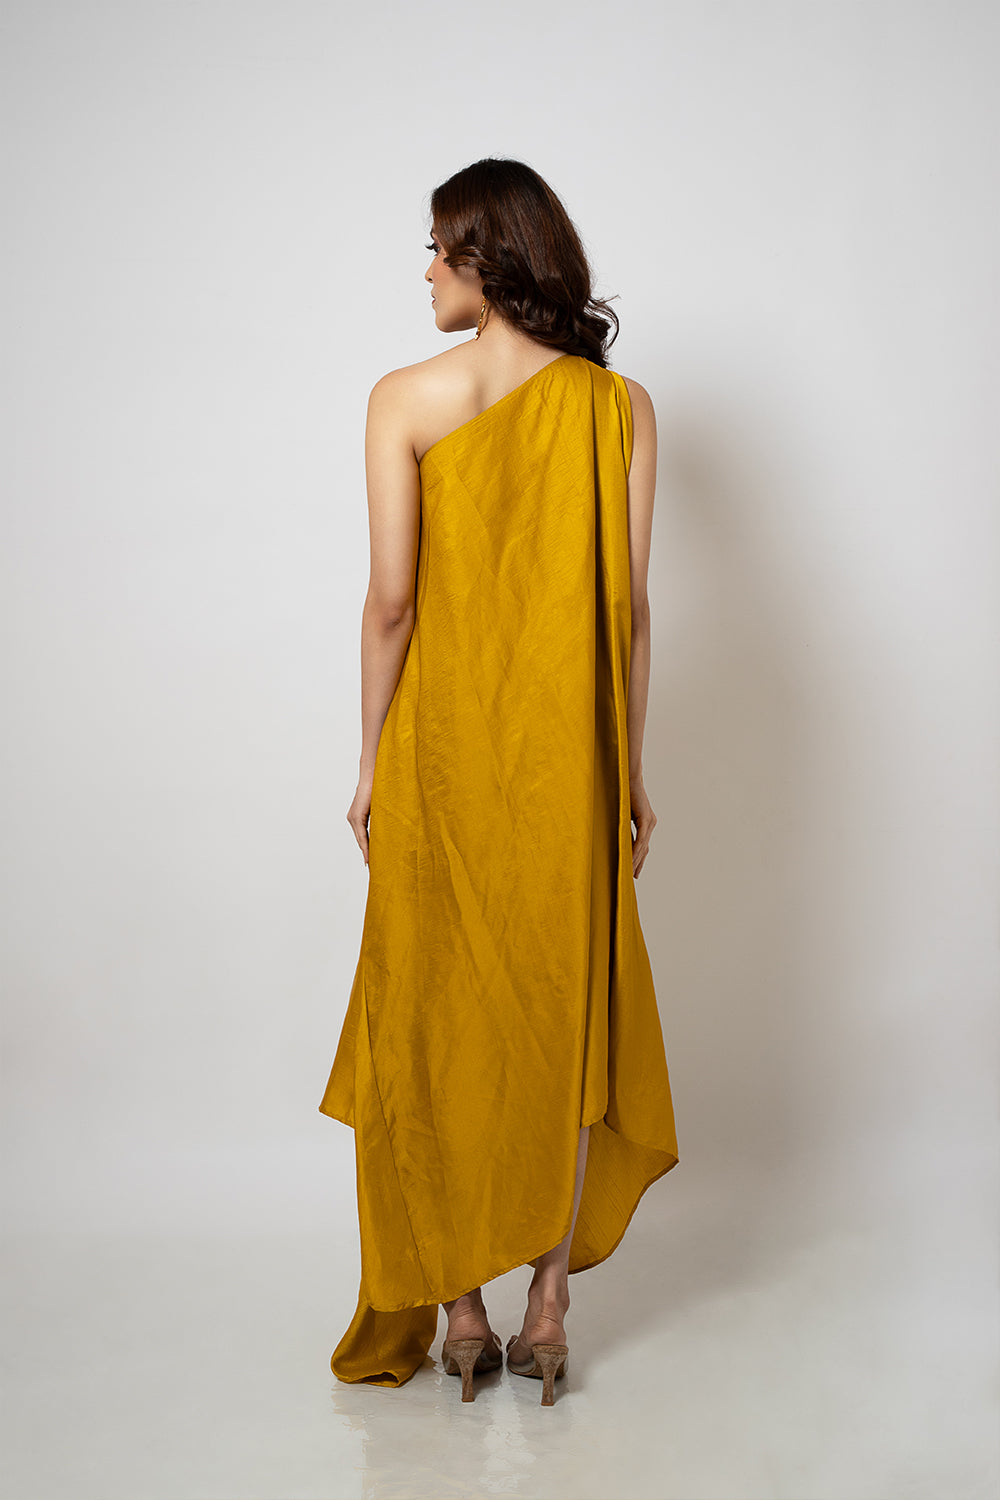 2. A zero waste one shoulder mustard yellow dress